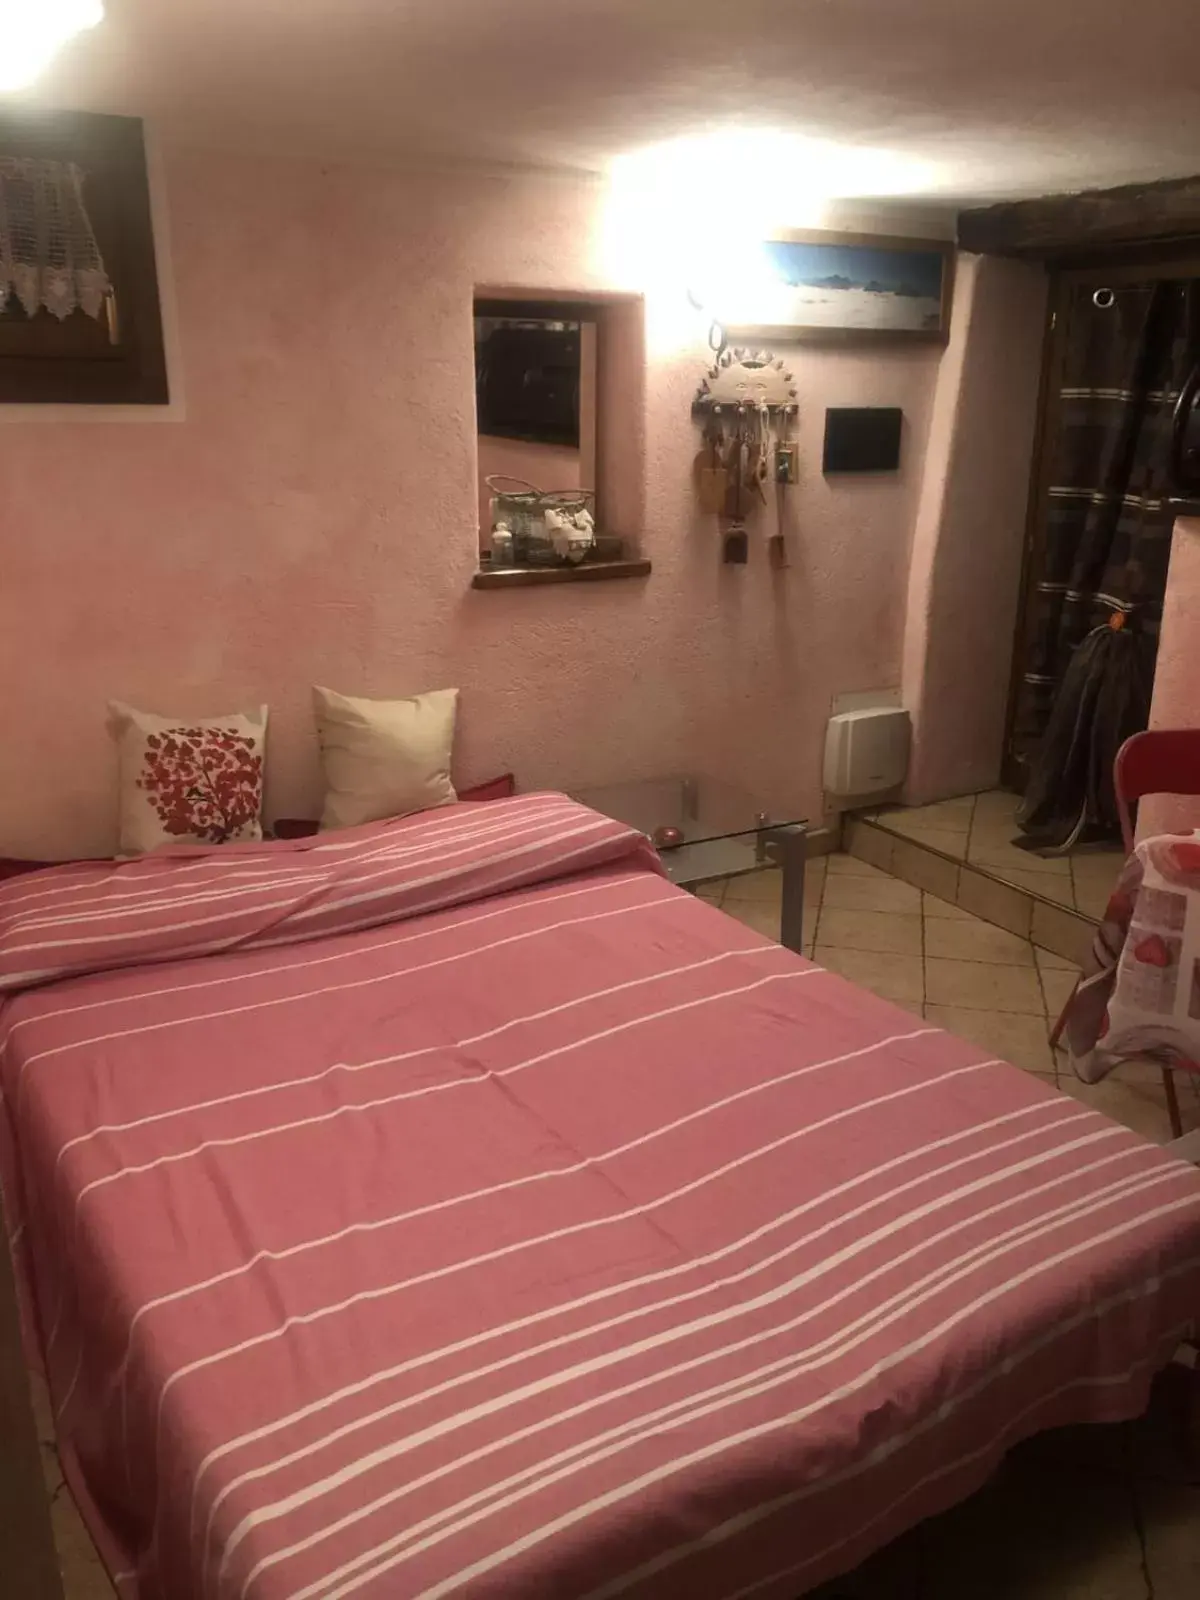 Bed in Camera matrimoniale in relax per 2 persone da Cinzia